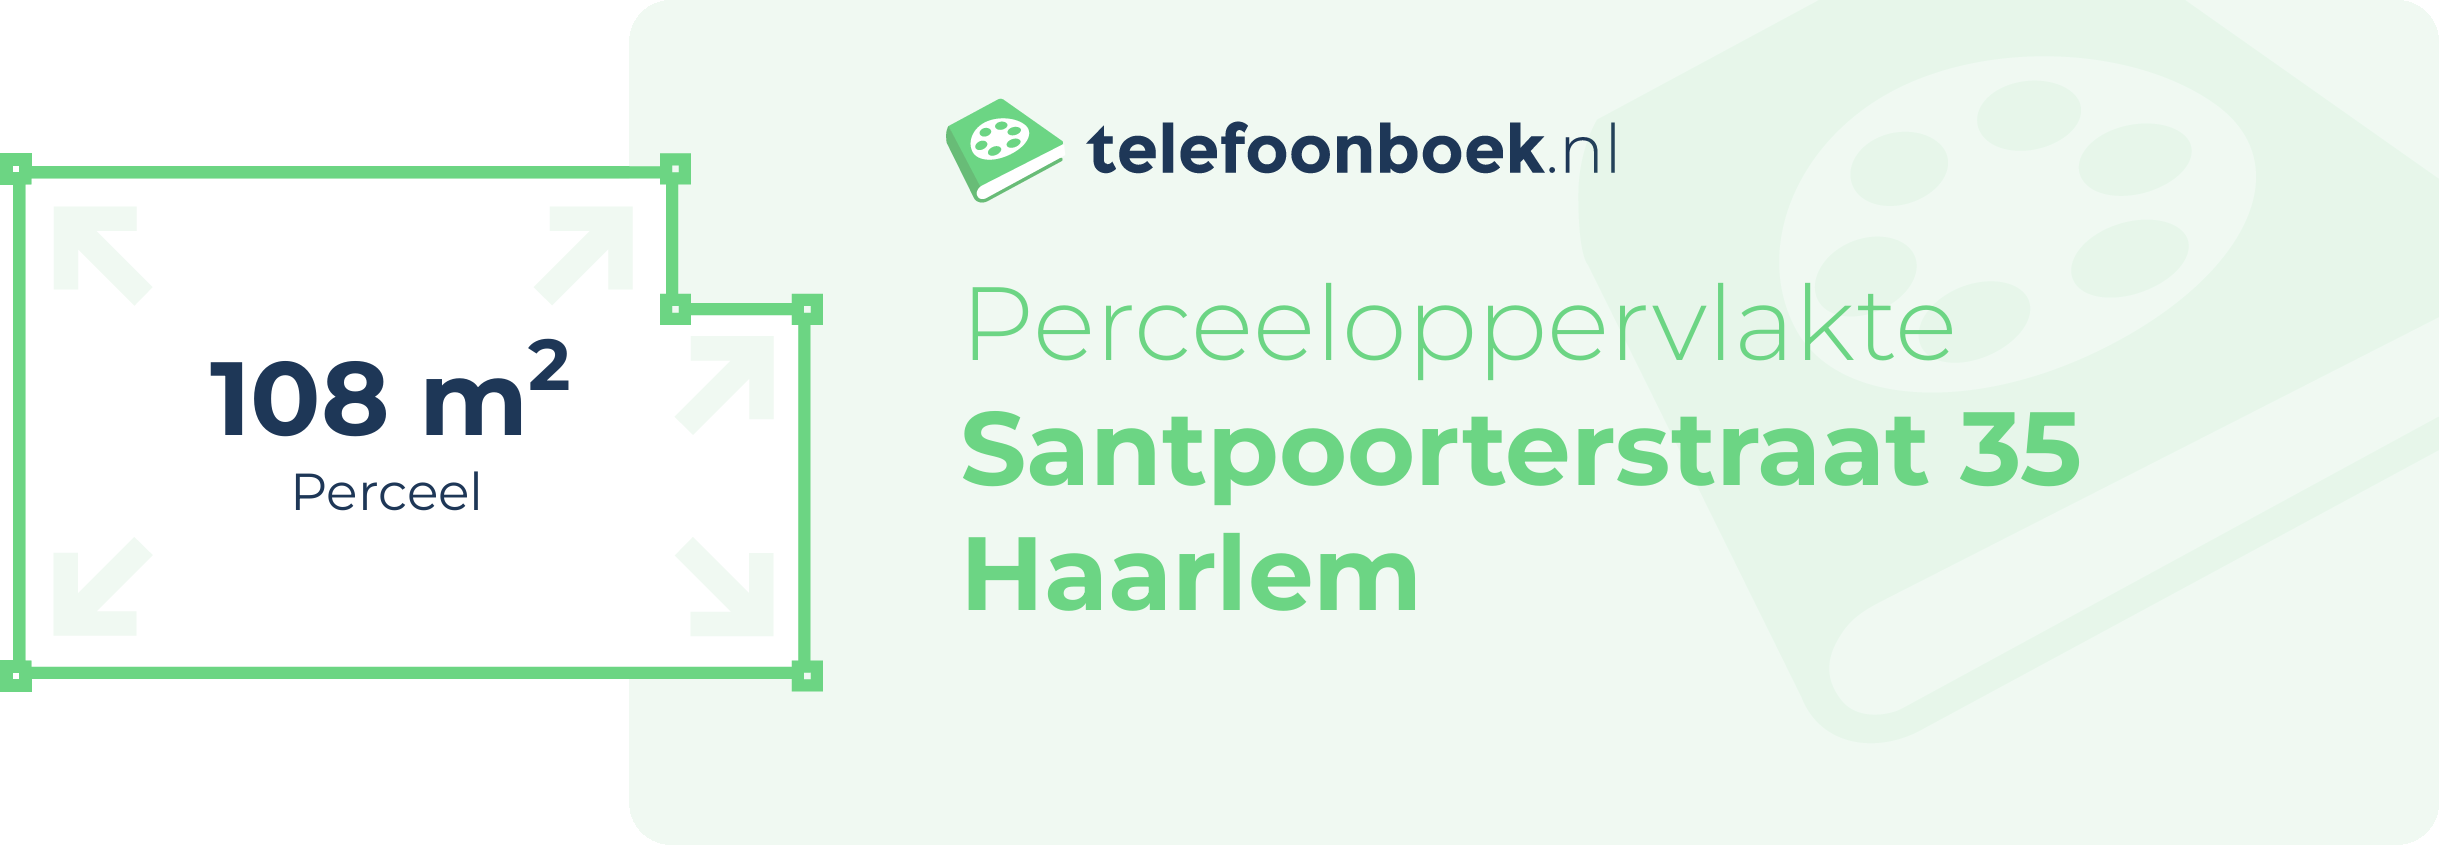 Perceeloppervlakte Santpoorterstraat 35 Haarlem